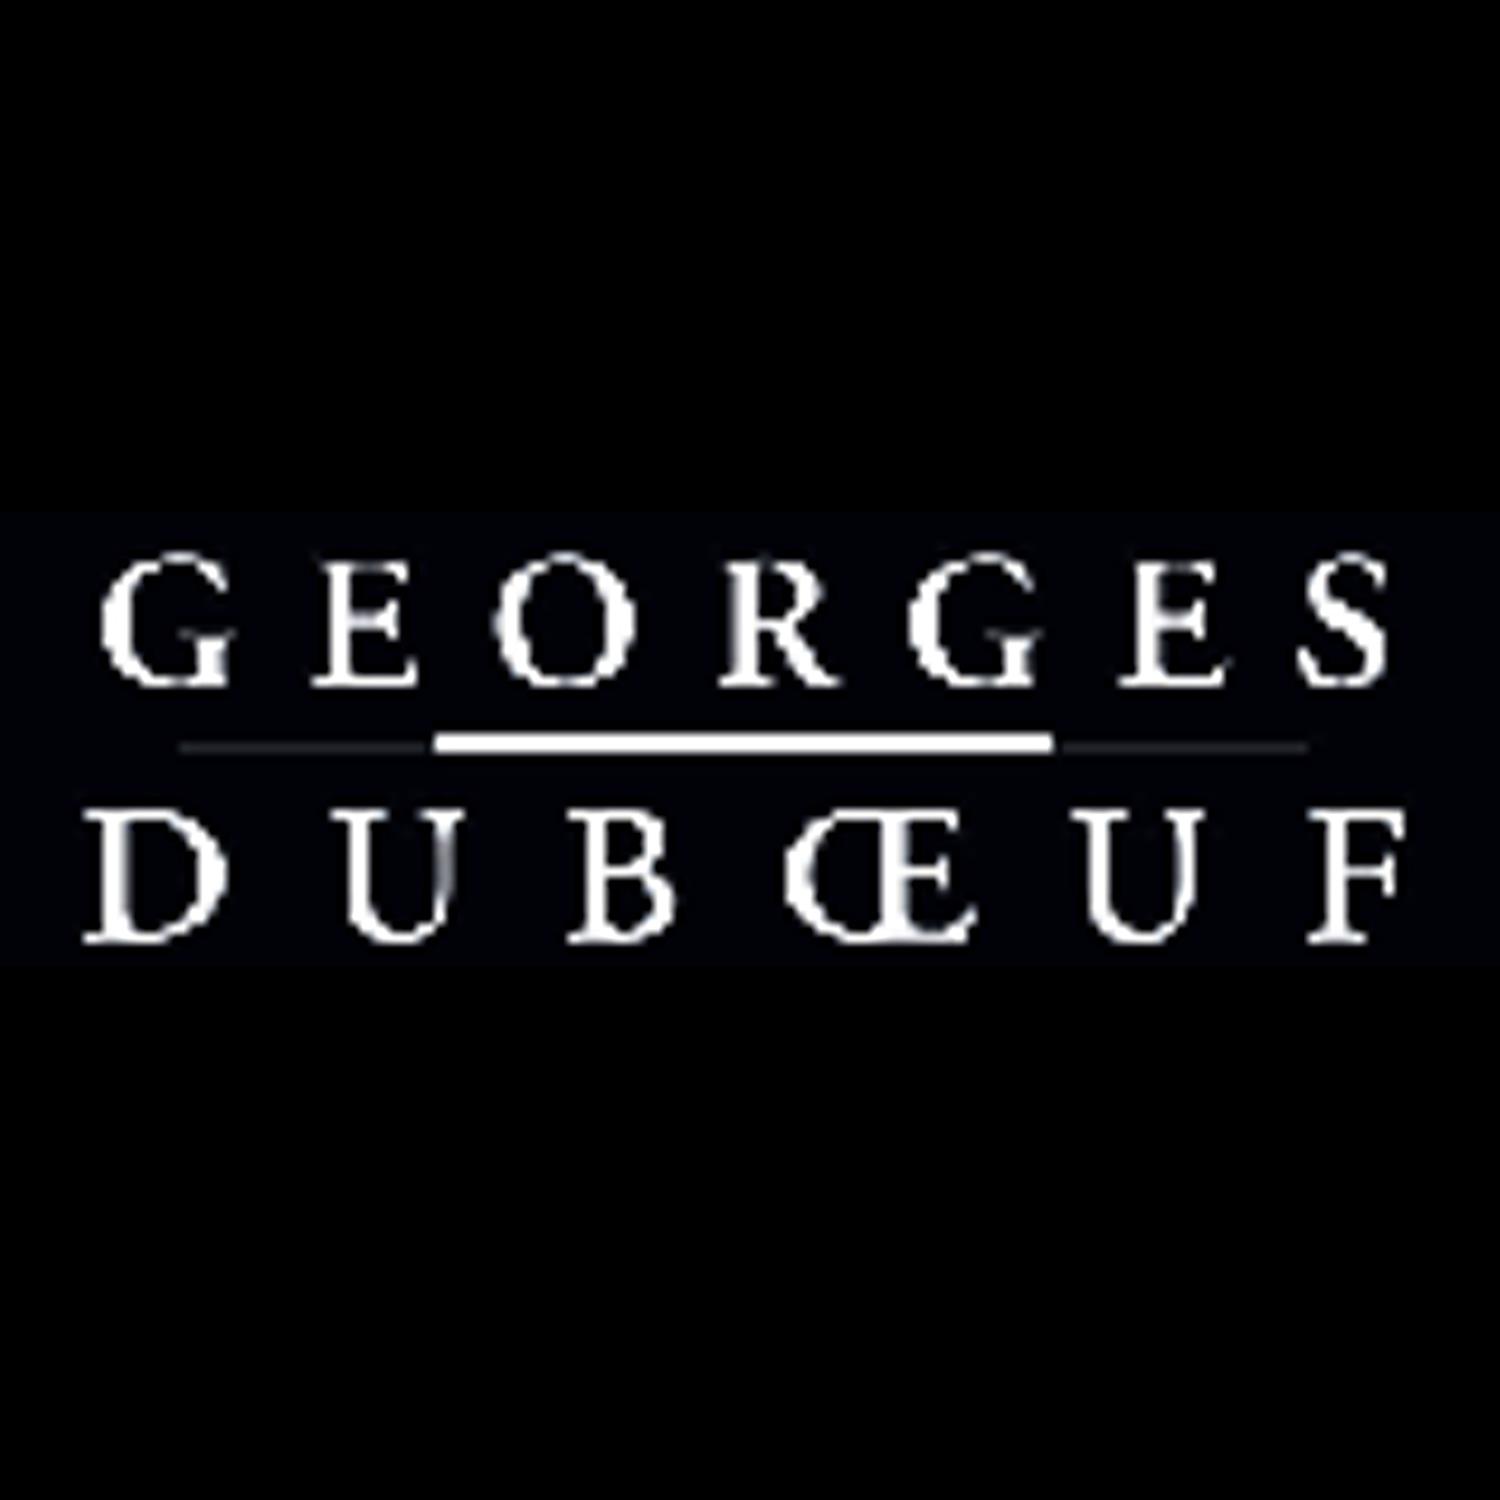 喬治杜勃福酒莊 Georges Dubœuf